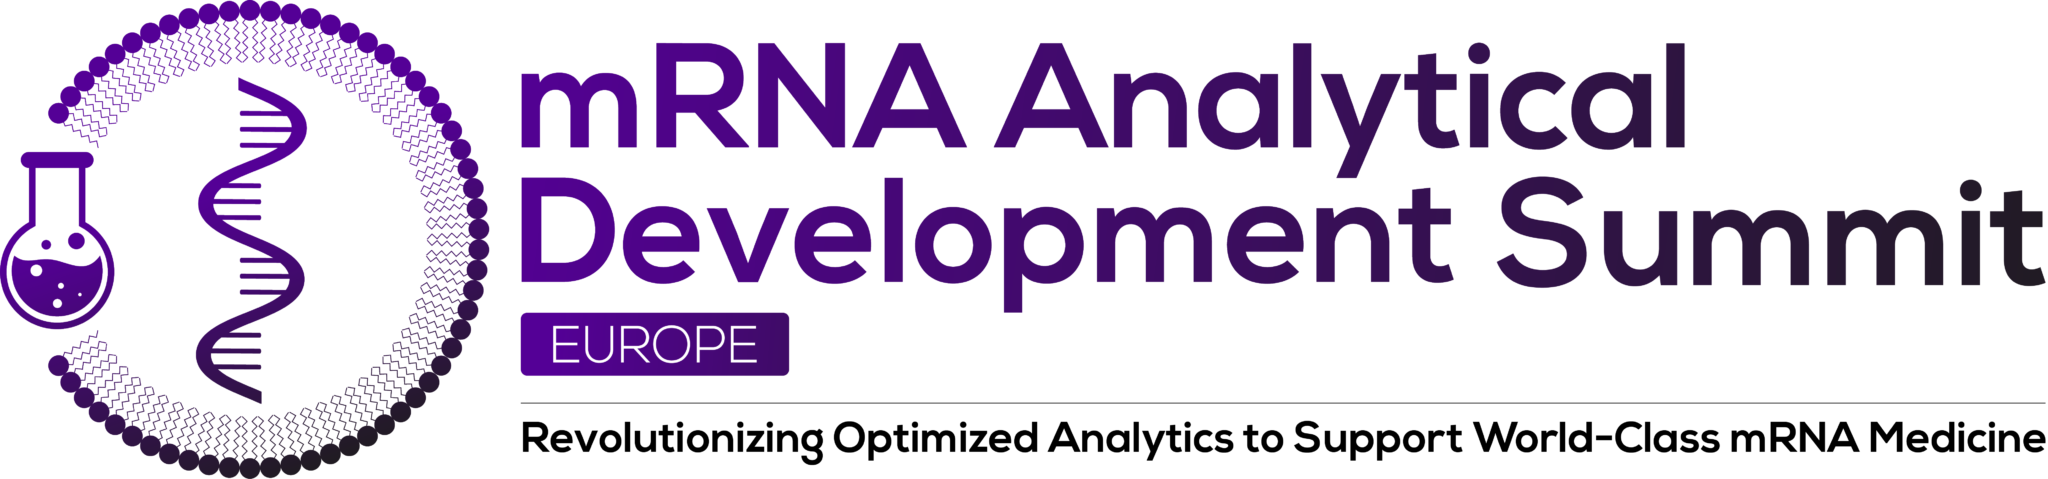 mRNA-Analytical-Development-Summit-Europe-logo_COL_STRAP-2048x479